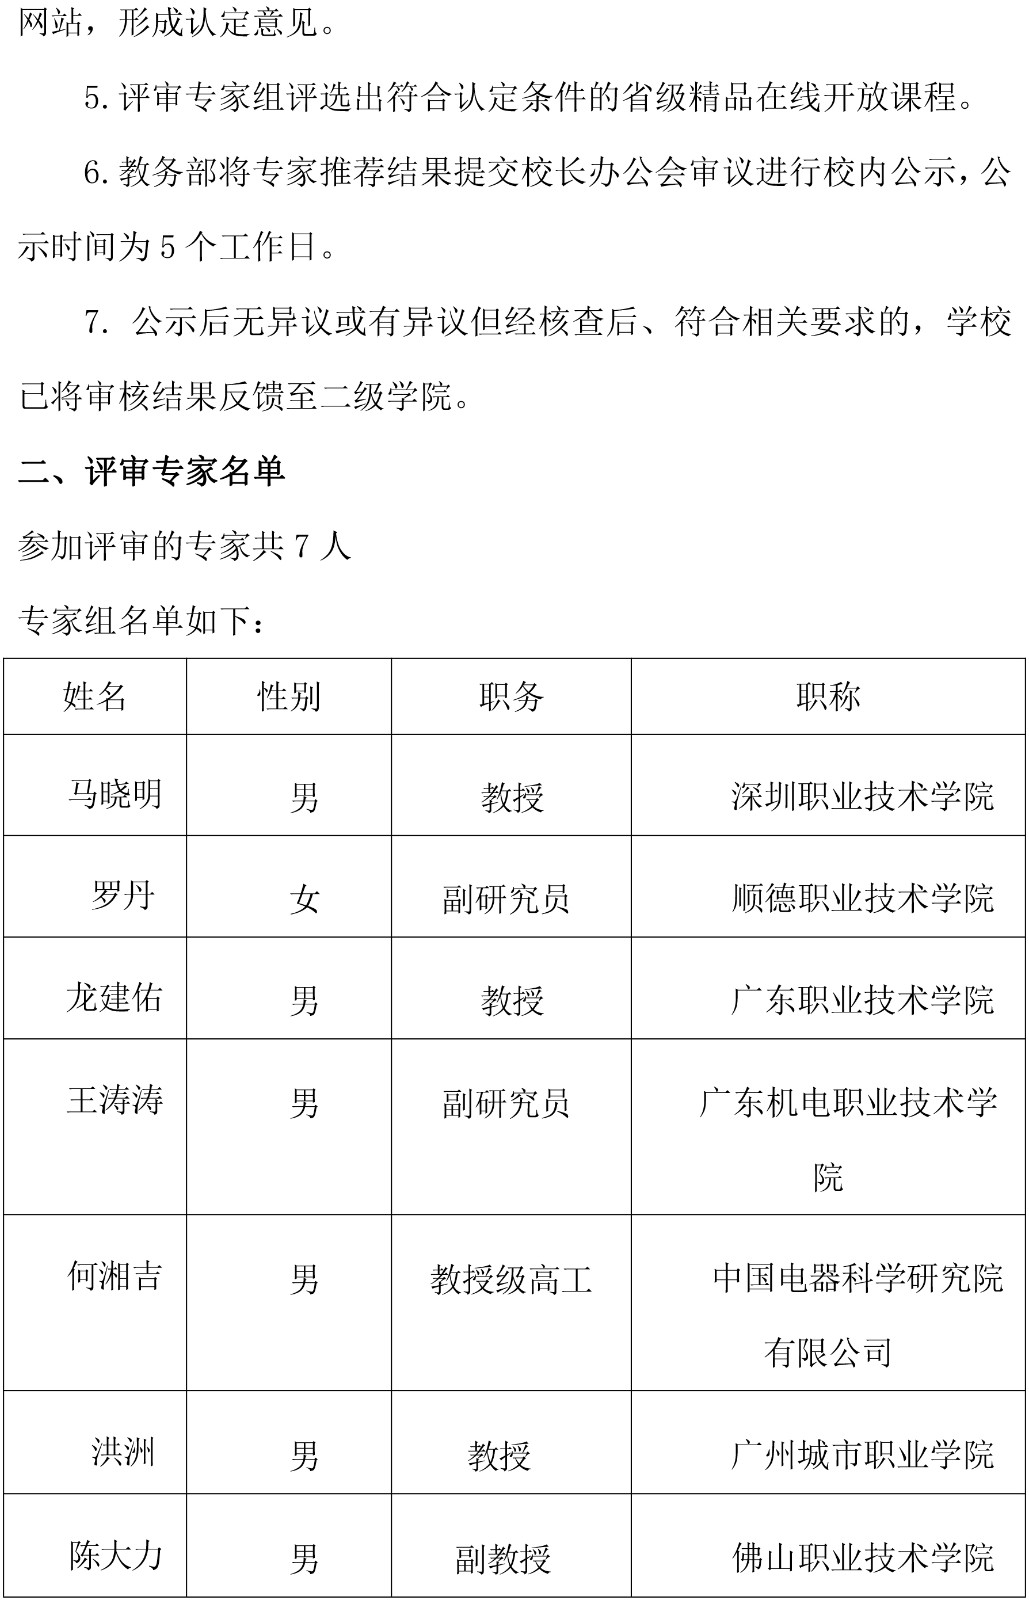 附件1：2021年广东轻工职业技术学院遴选推荐省高职教育精品在线开放课程的总结报告-2.jpg